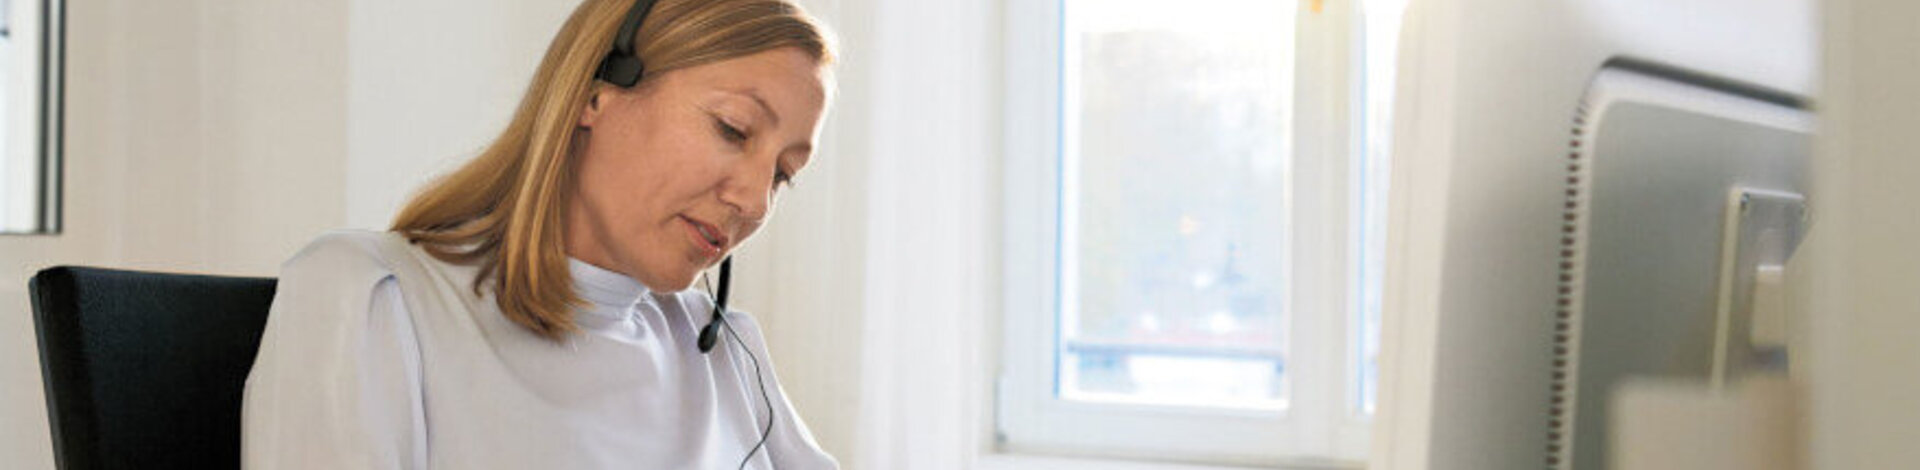 Eine Frau im Büro mit Headset gibt eine telefonische Beratung.